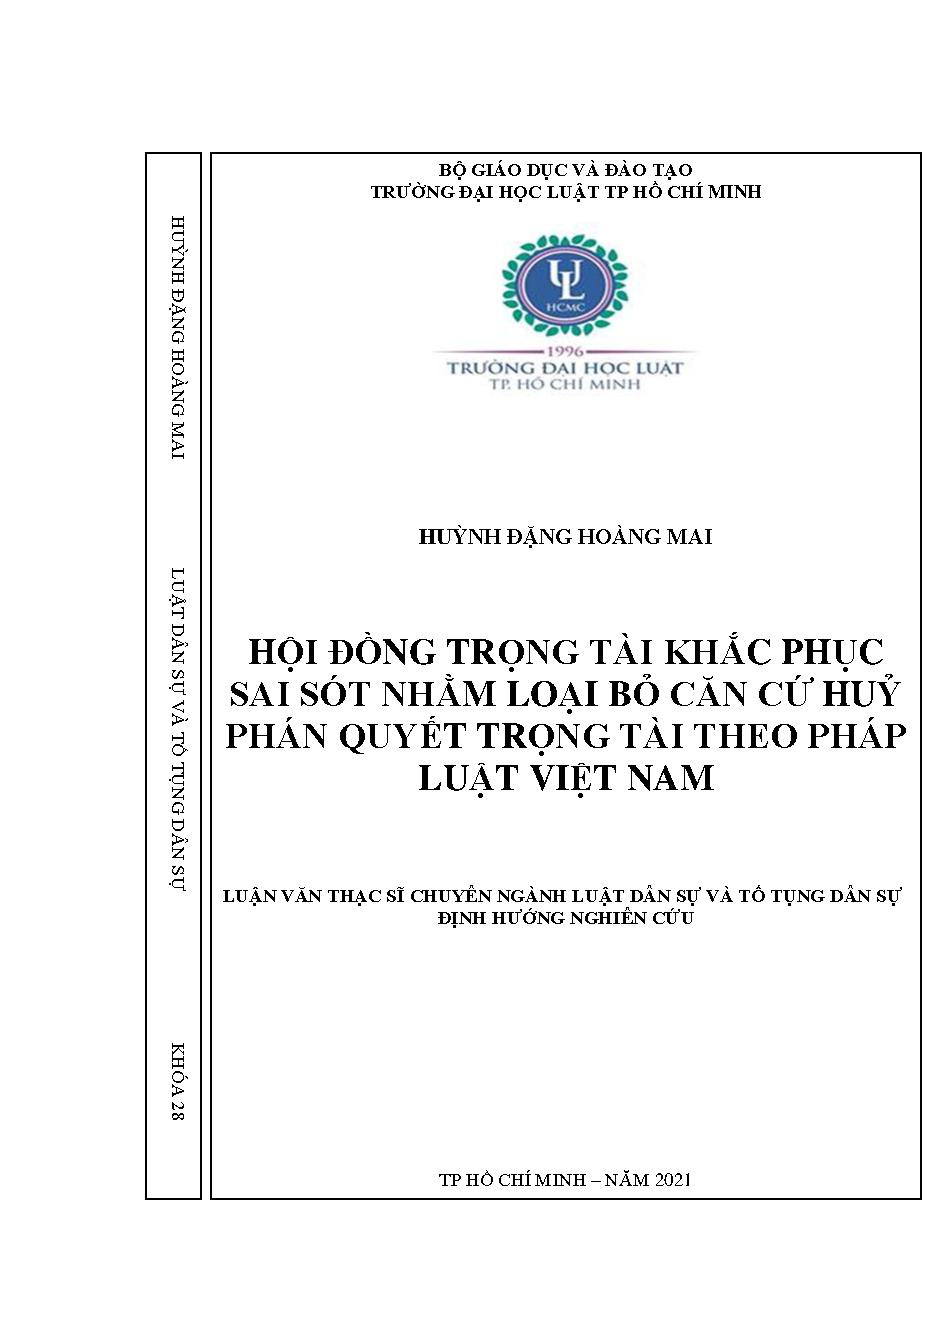 Hội đồng trọng tài khắc phục sai sót nhằm loại bỏ căn cứ hủy phán quyết trọng tài theo pháp luật Việt Nam